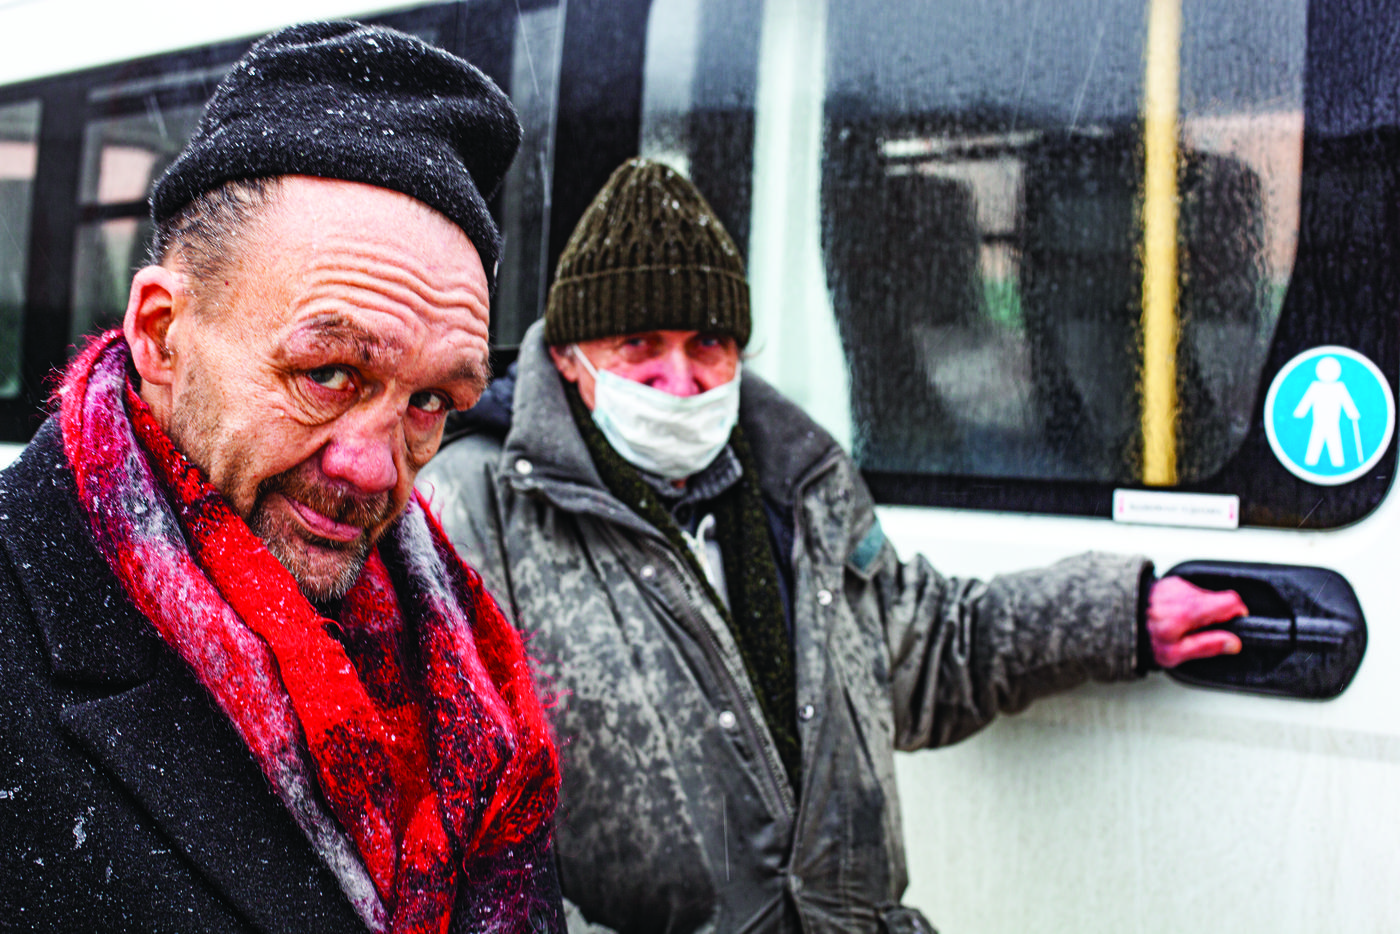 Гражданин бомж. Пункт обогрева для бездомных в Москве.